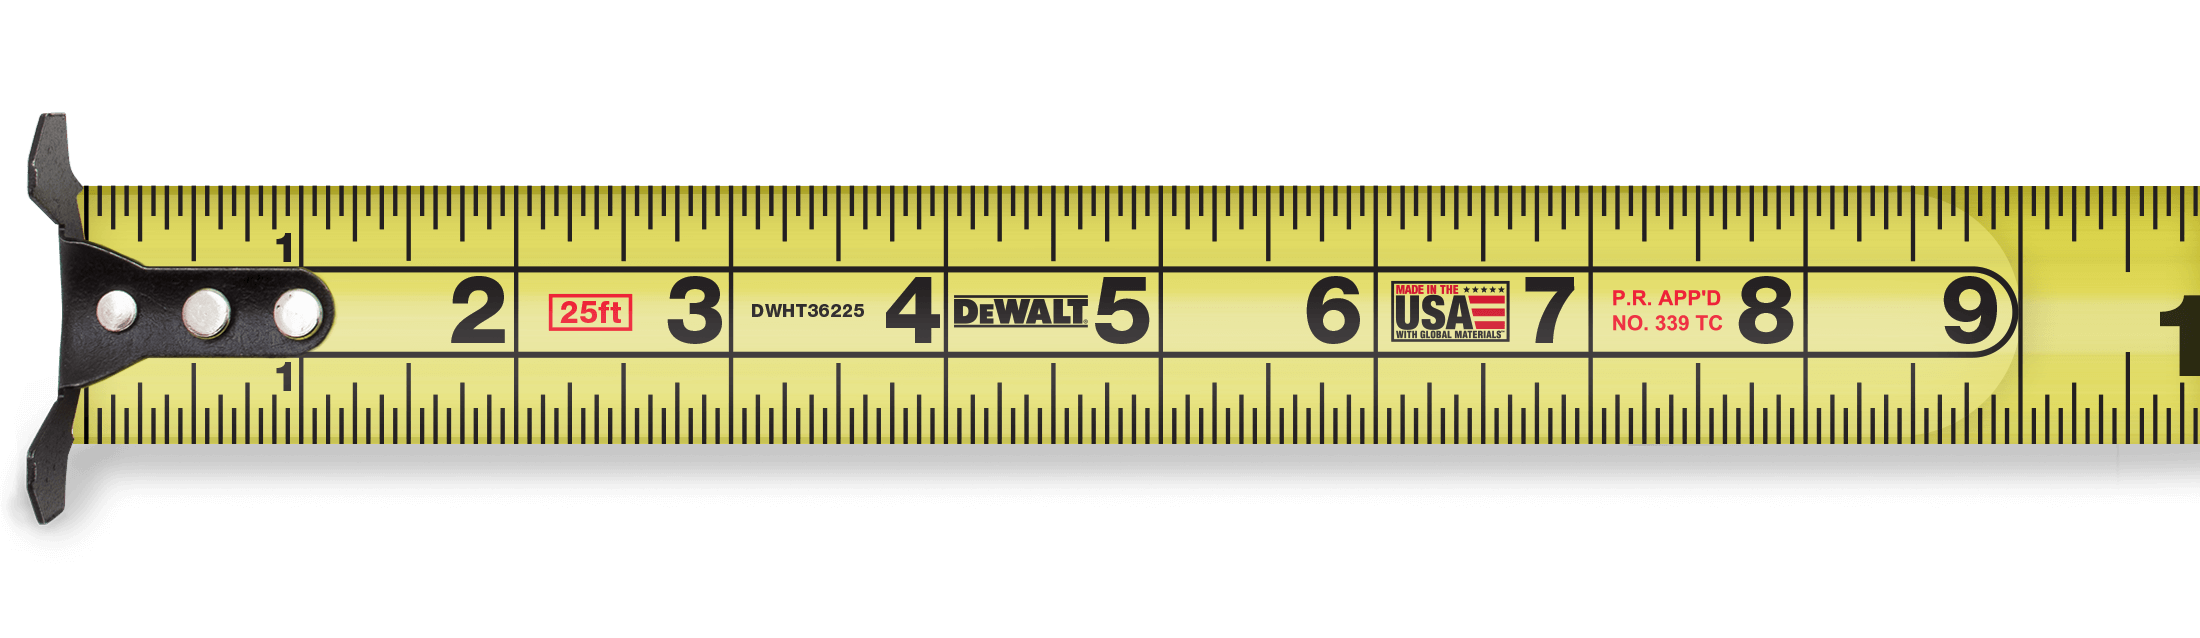 clipart ruler measuring tape